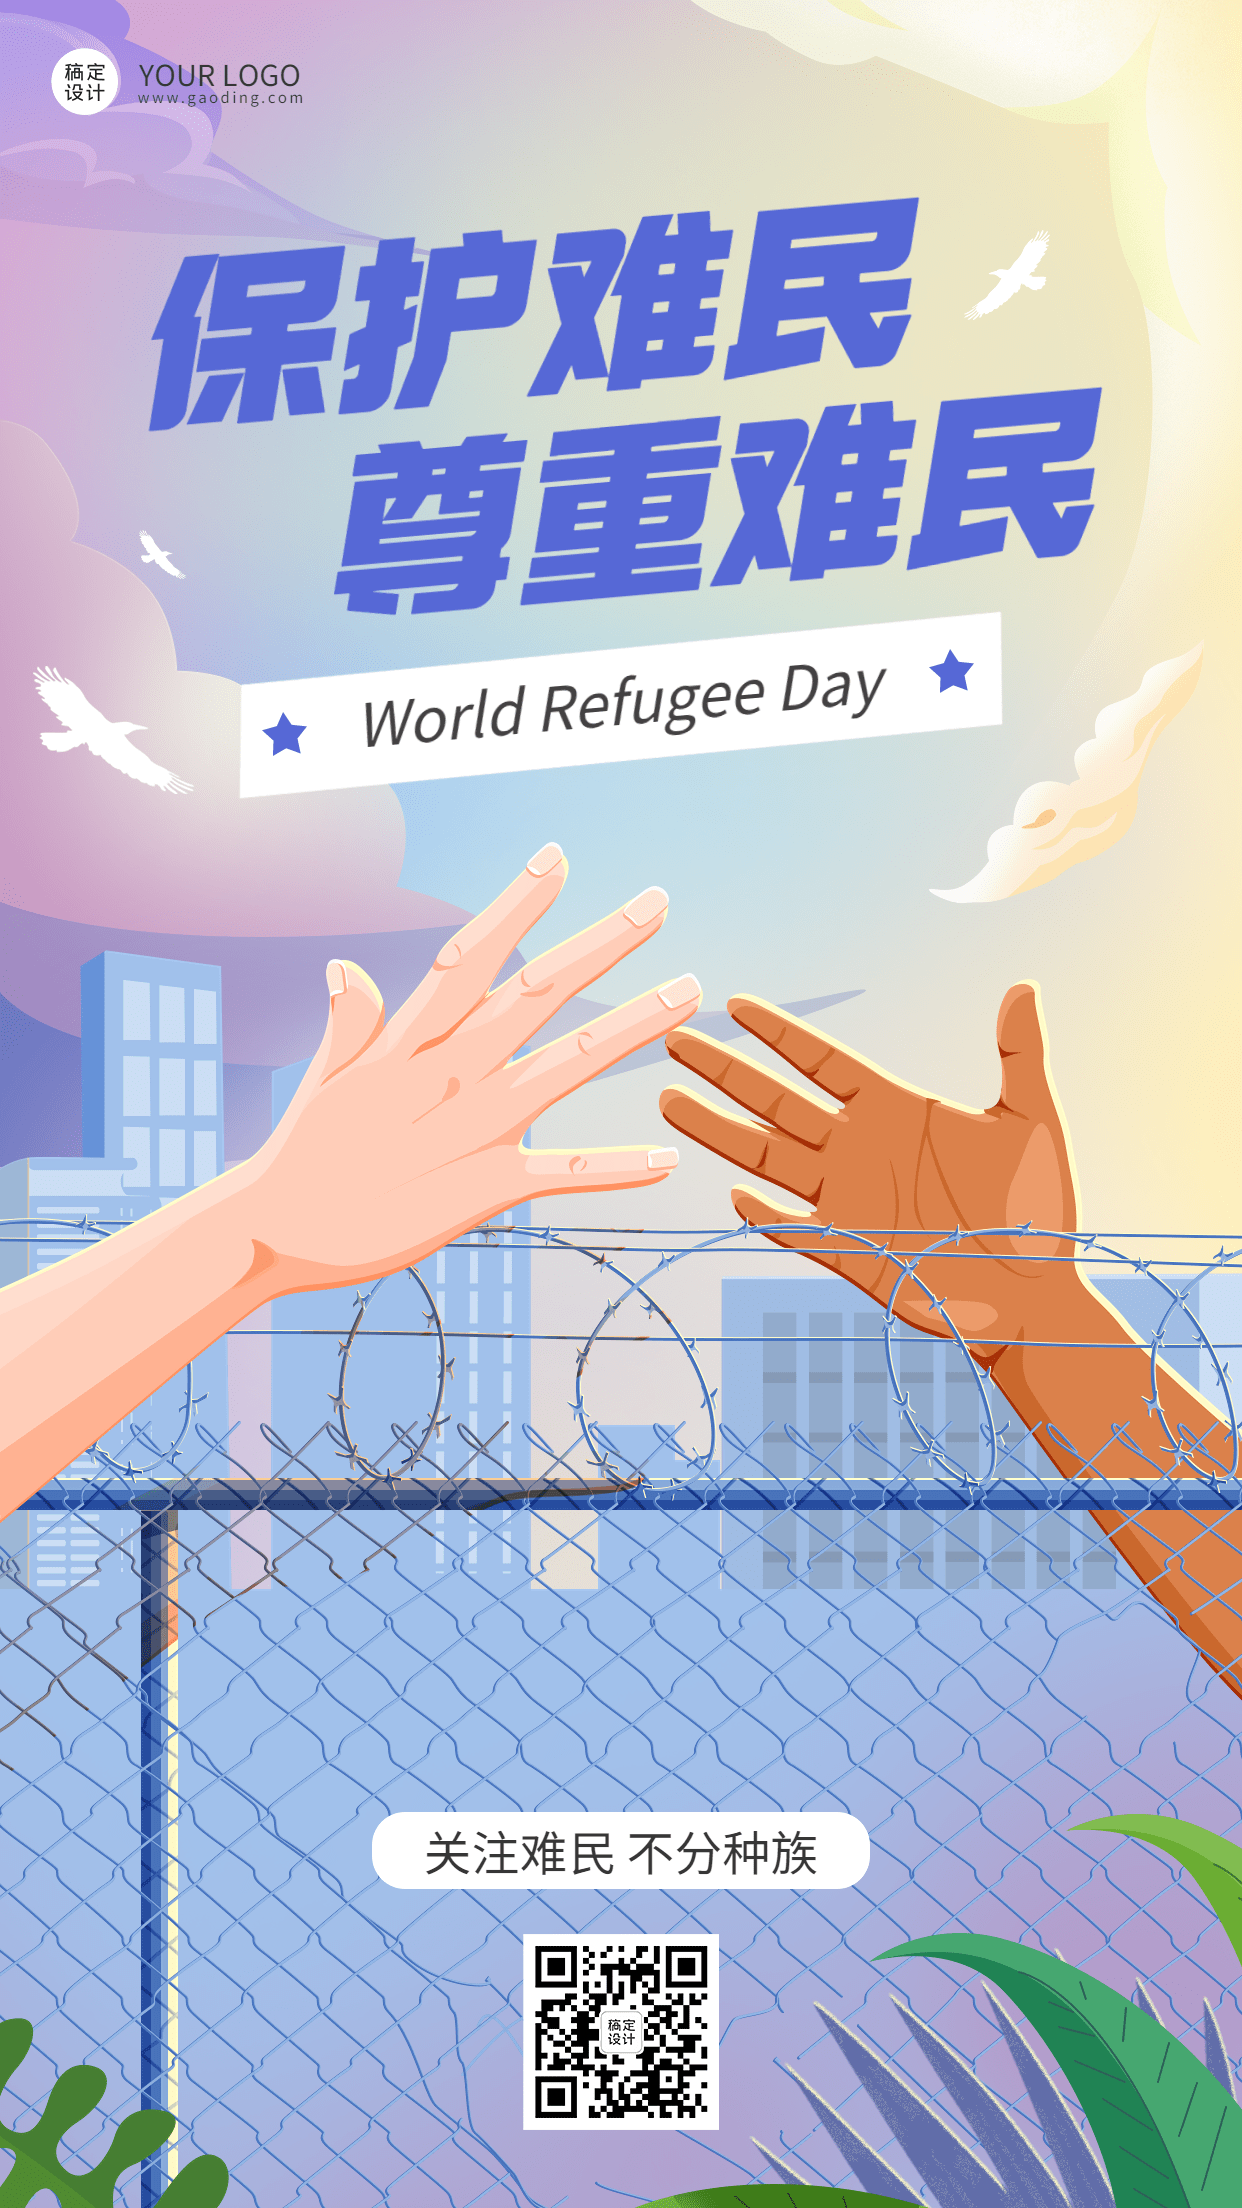 世界难民日节日宣传手绘插画手机海报预览效果